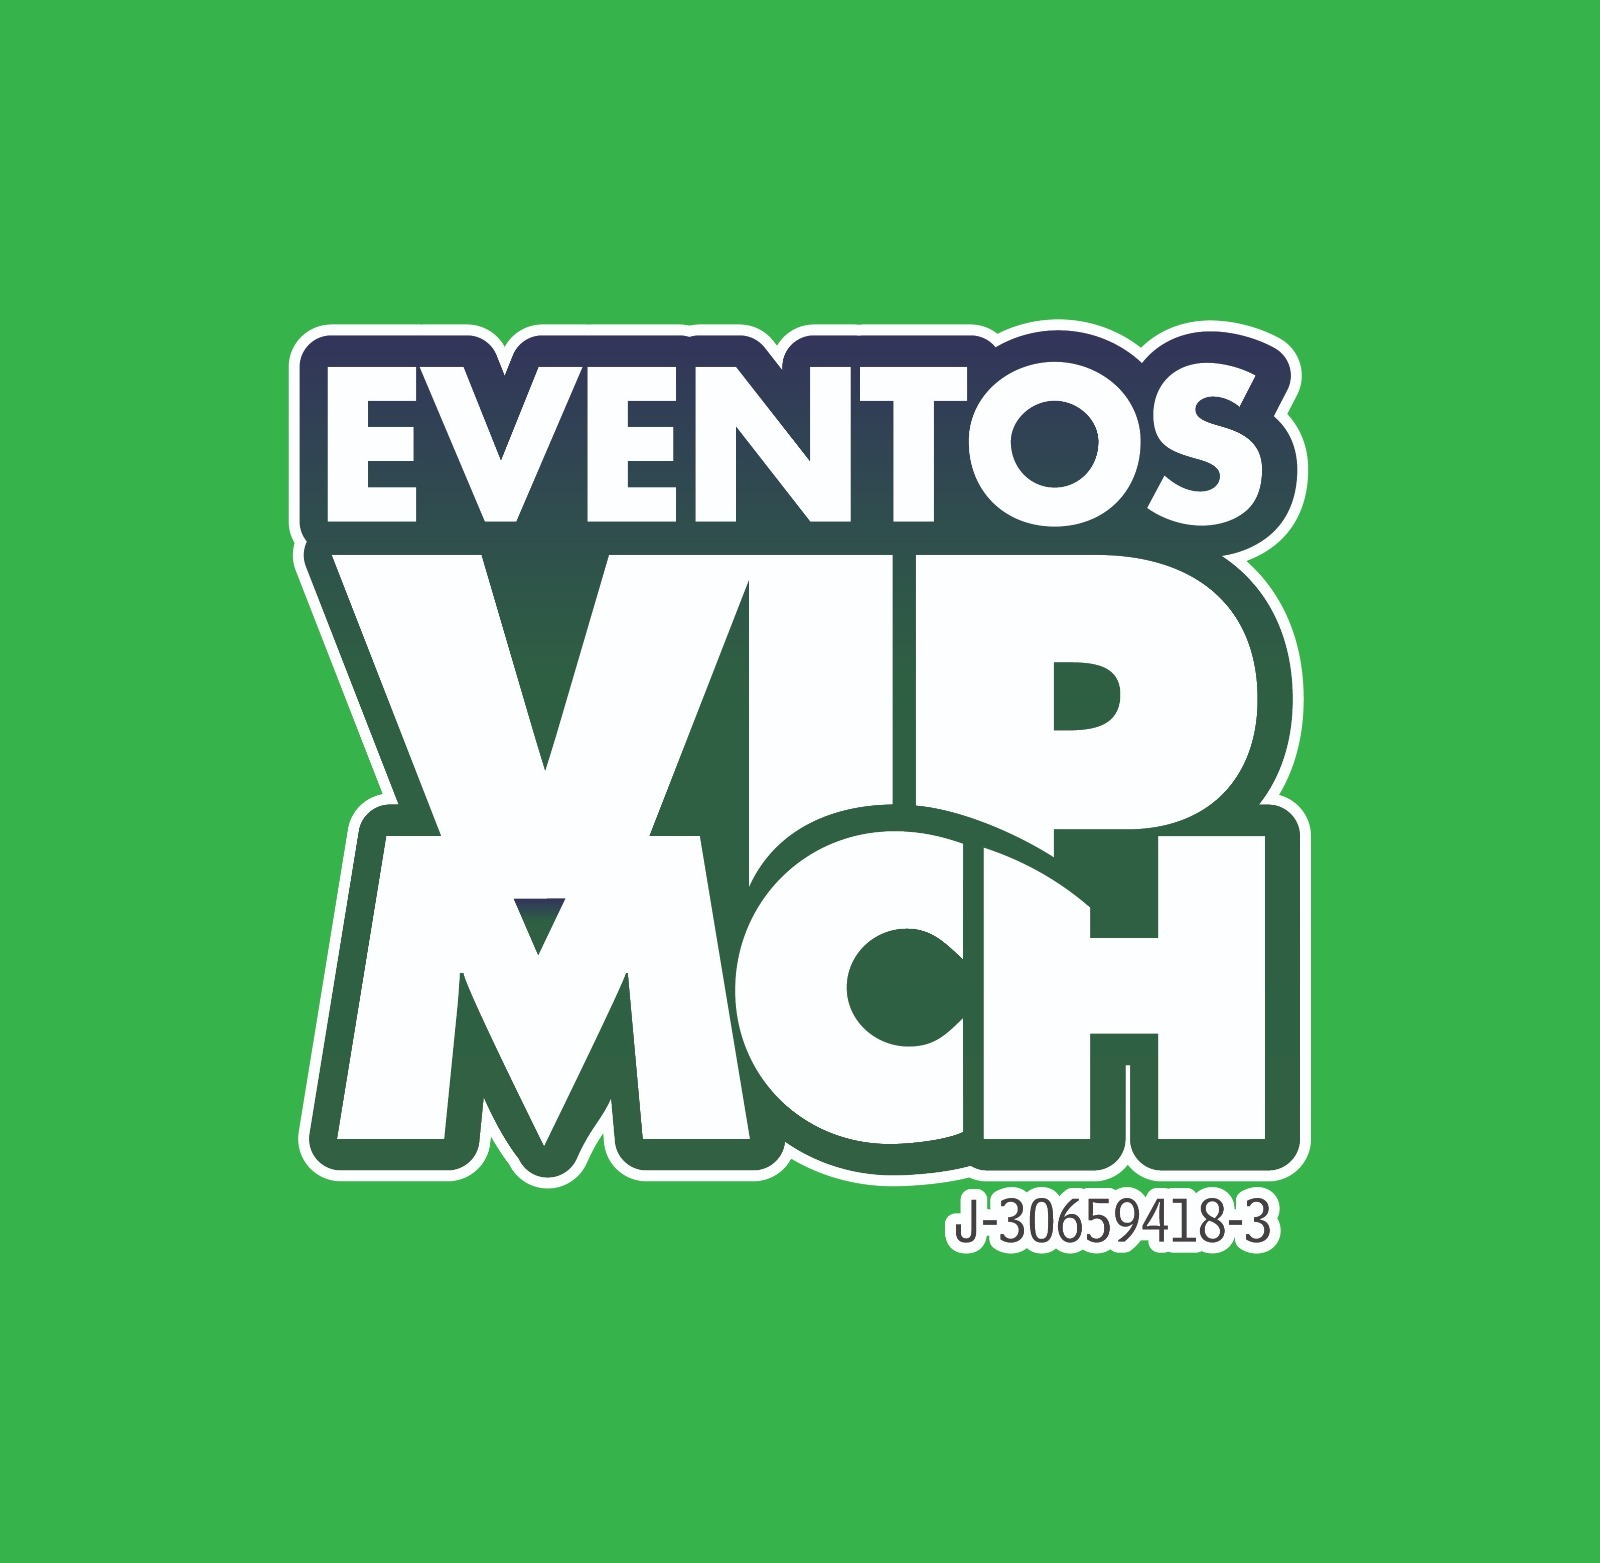 Eventos VIPMCH